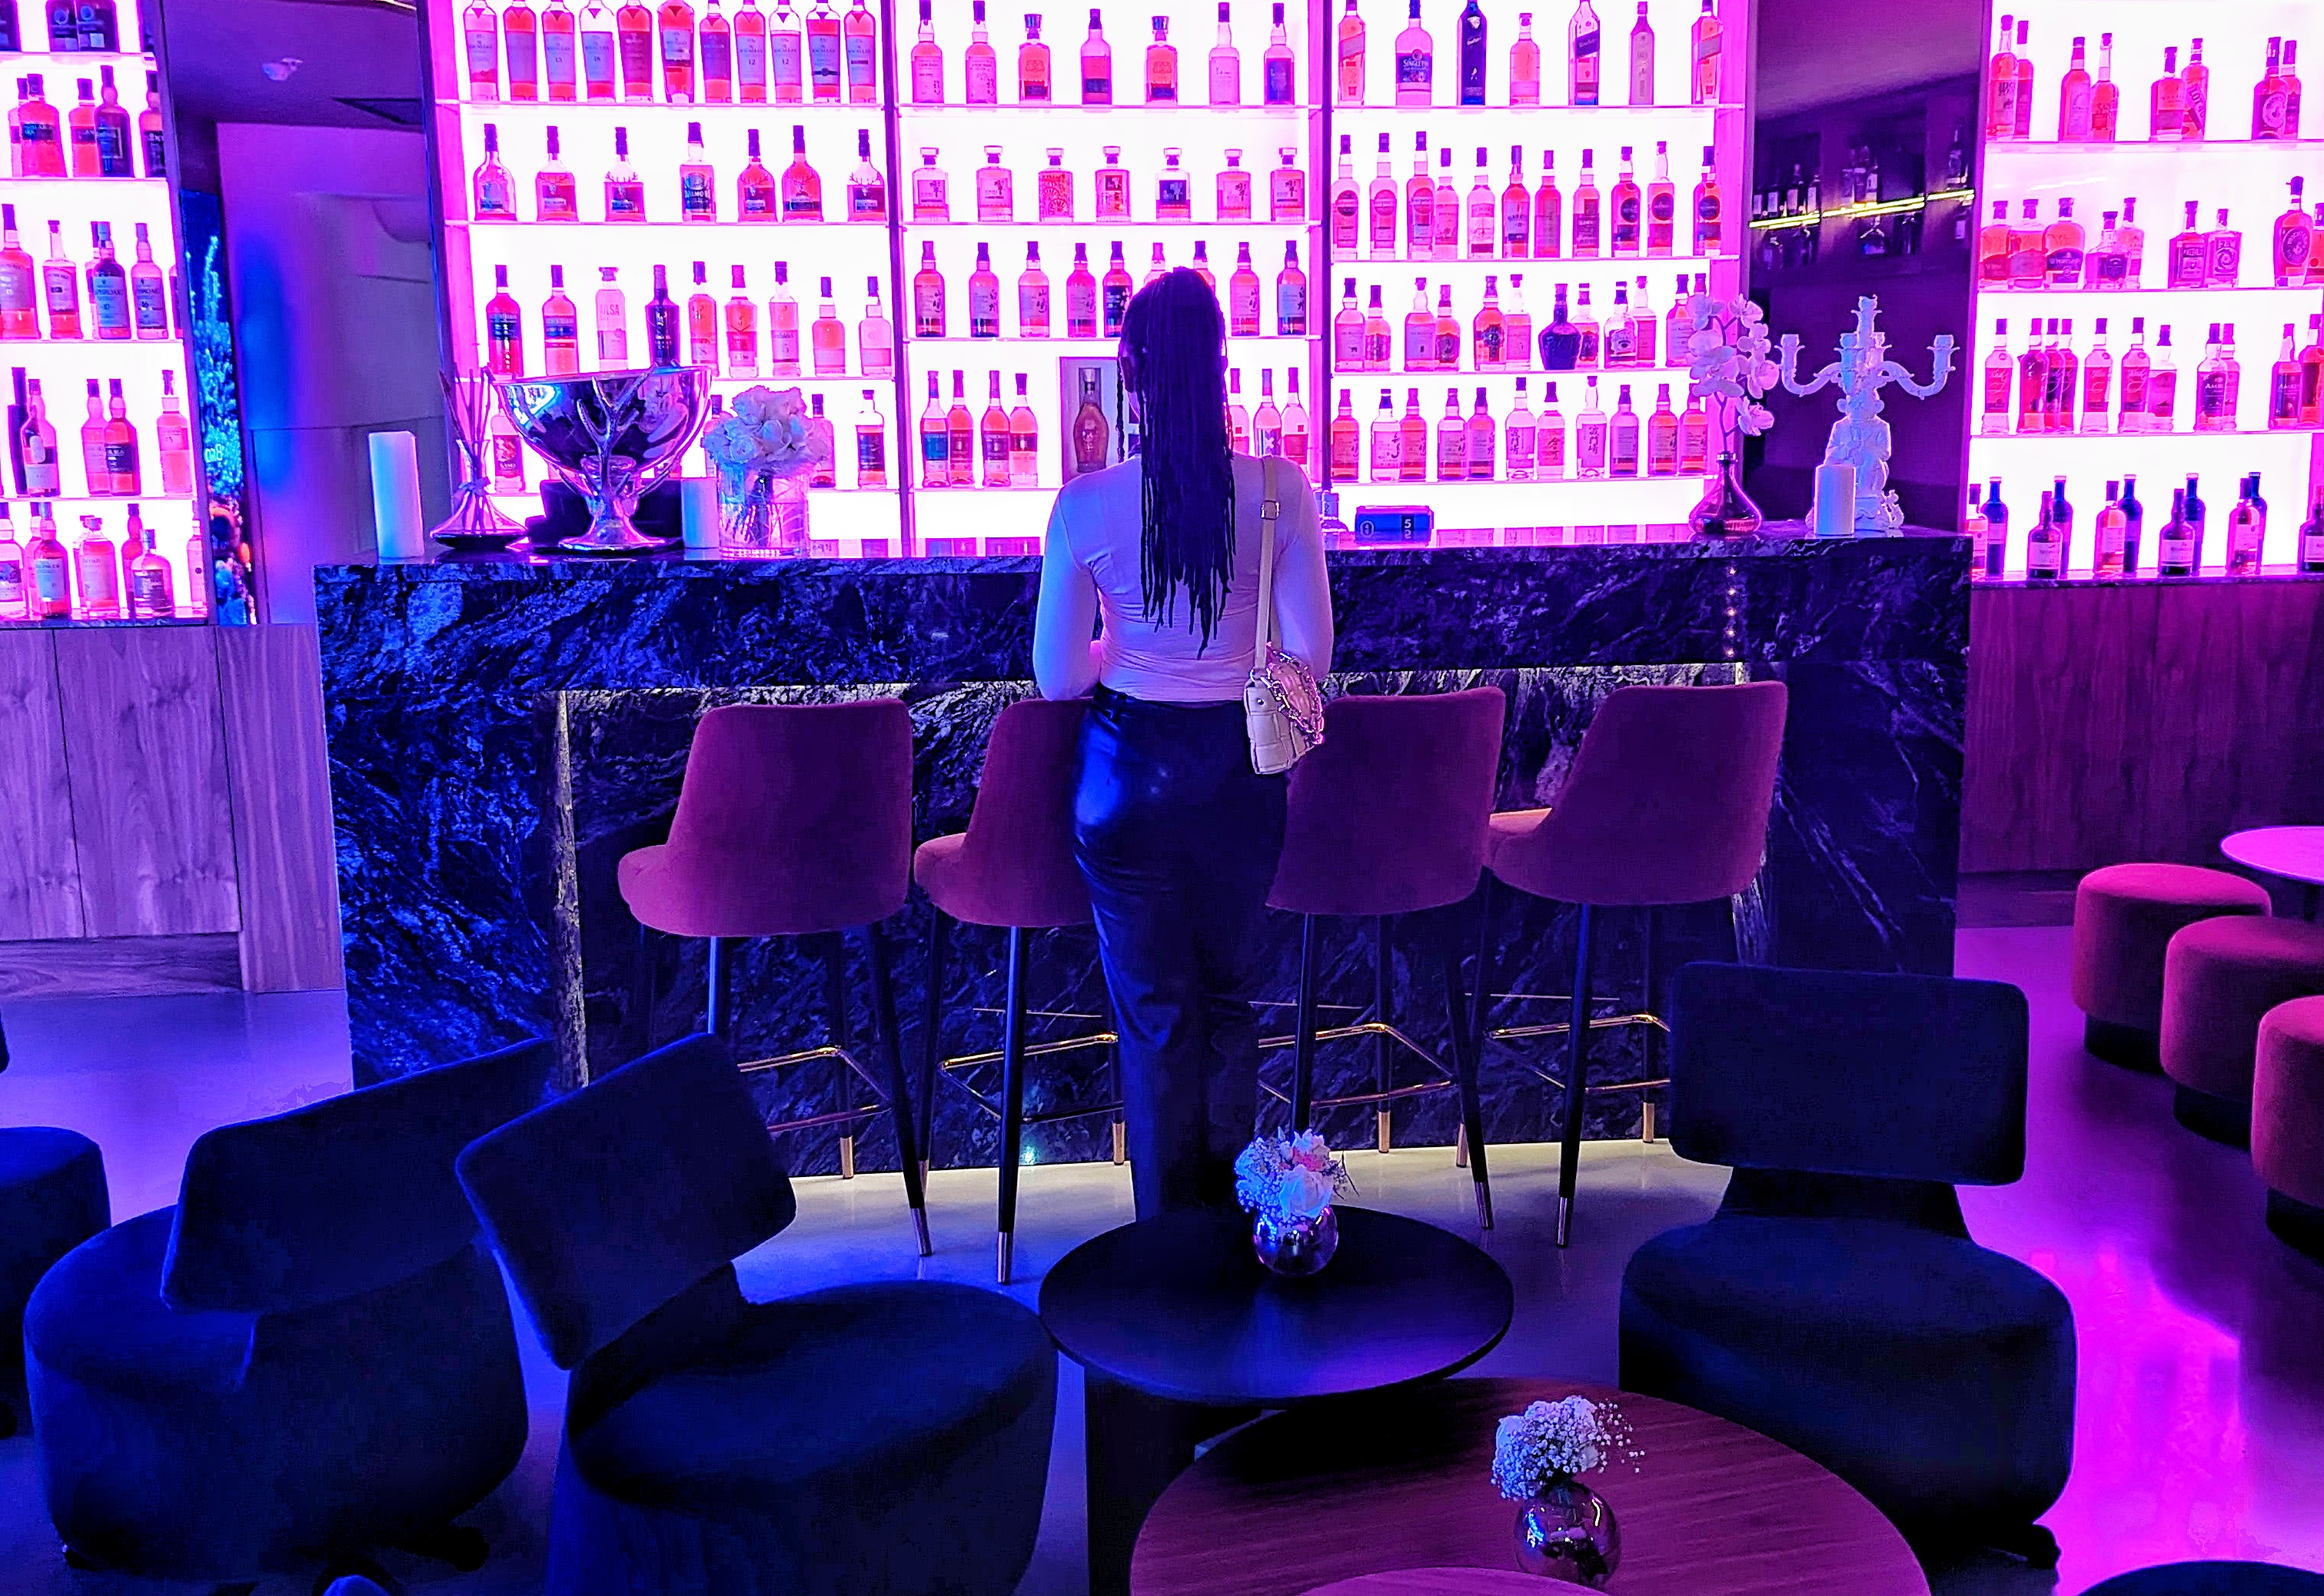 London bar